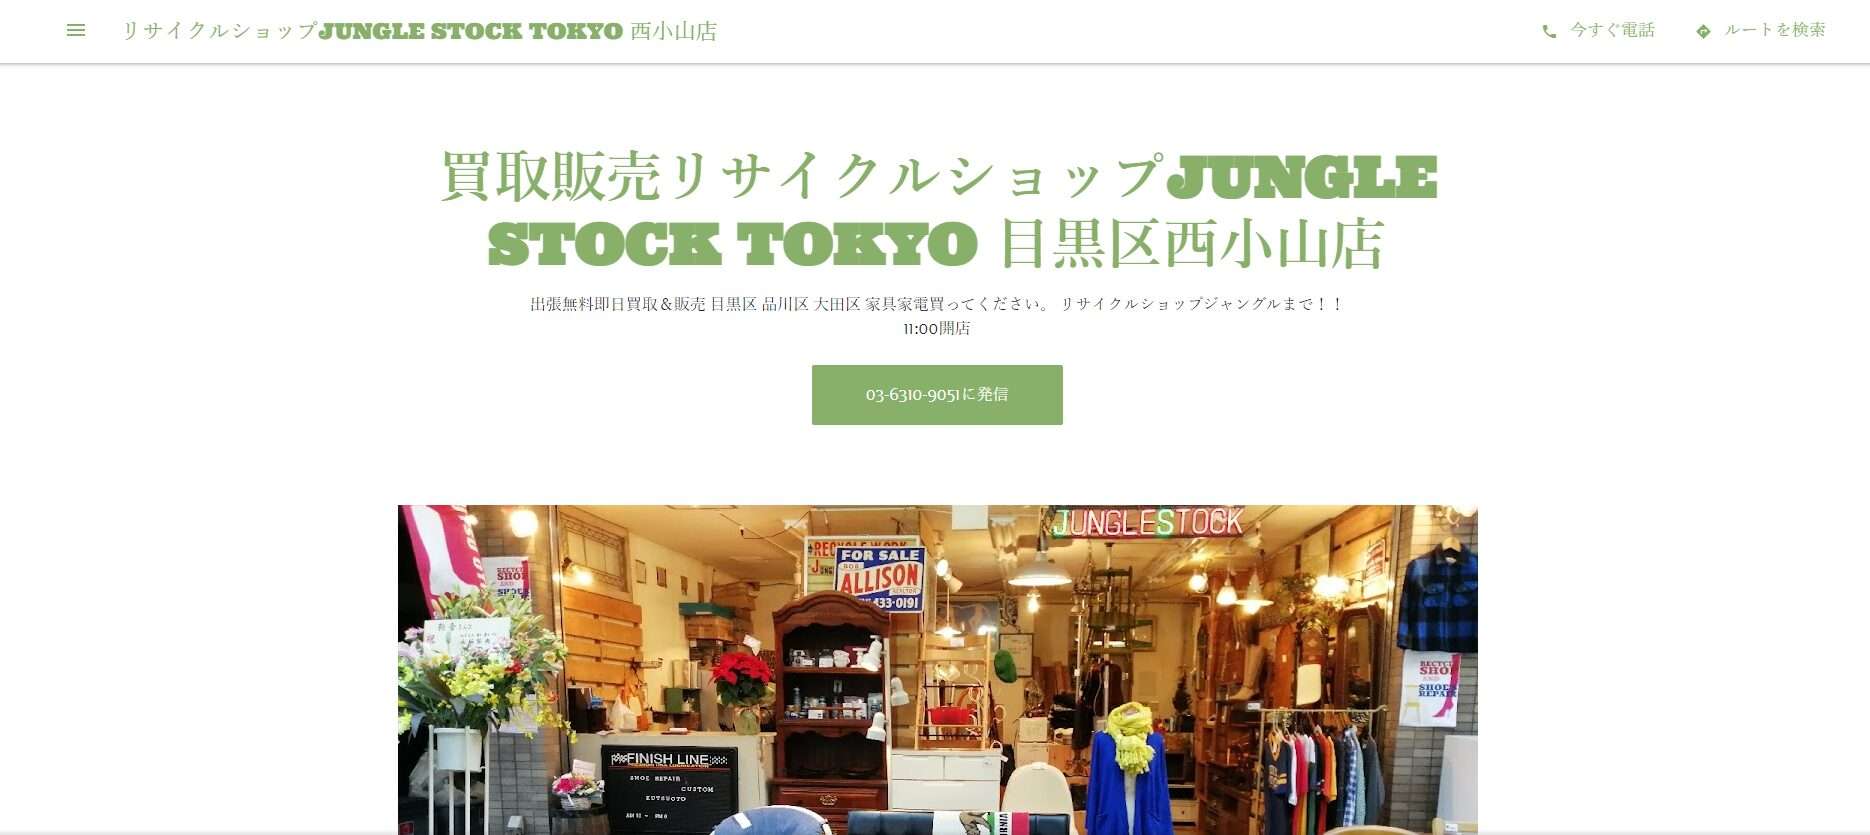 リサイクルショップJUNGLE STOCK TOKYO